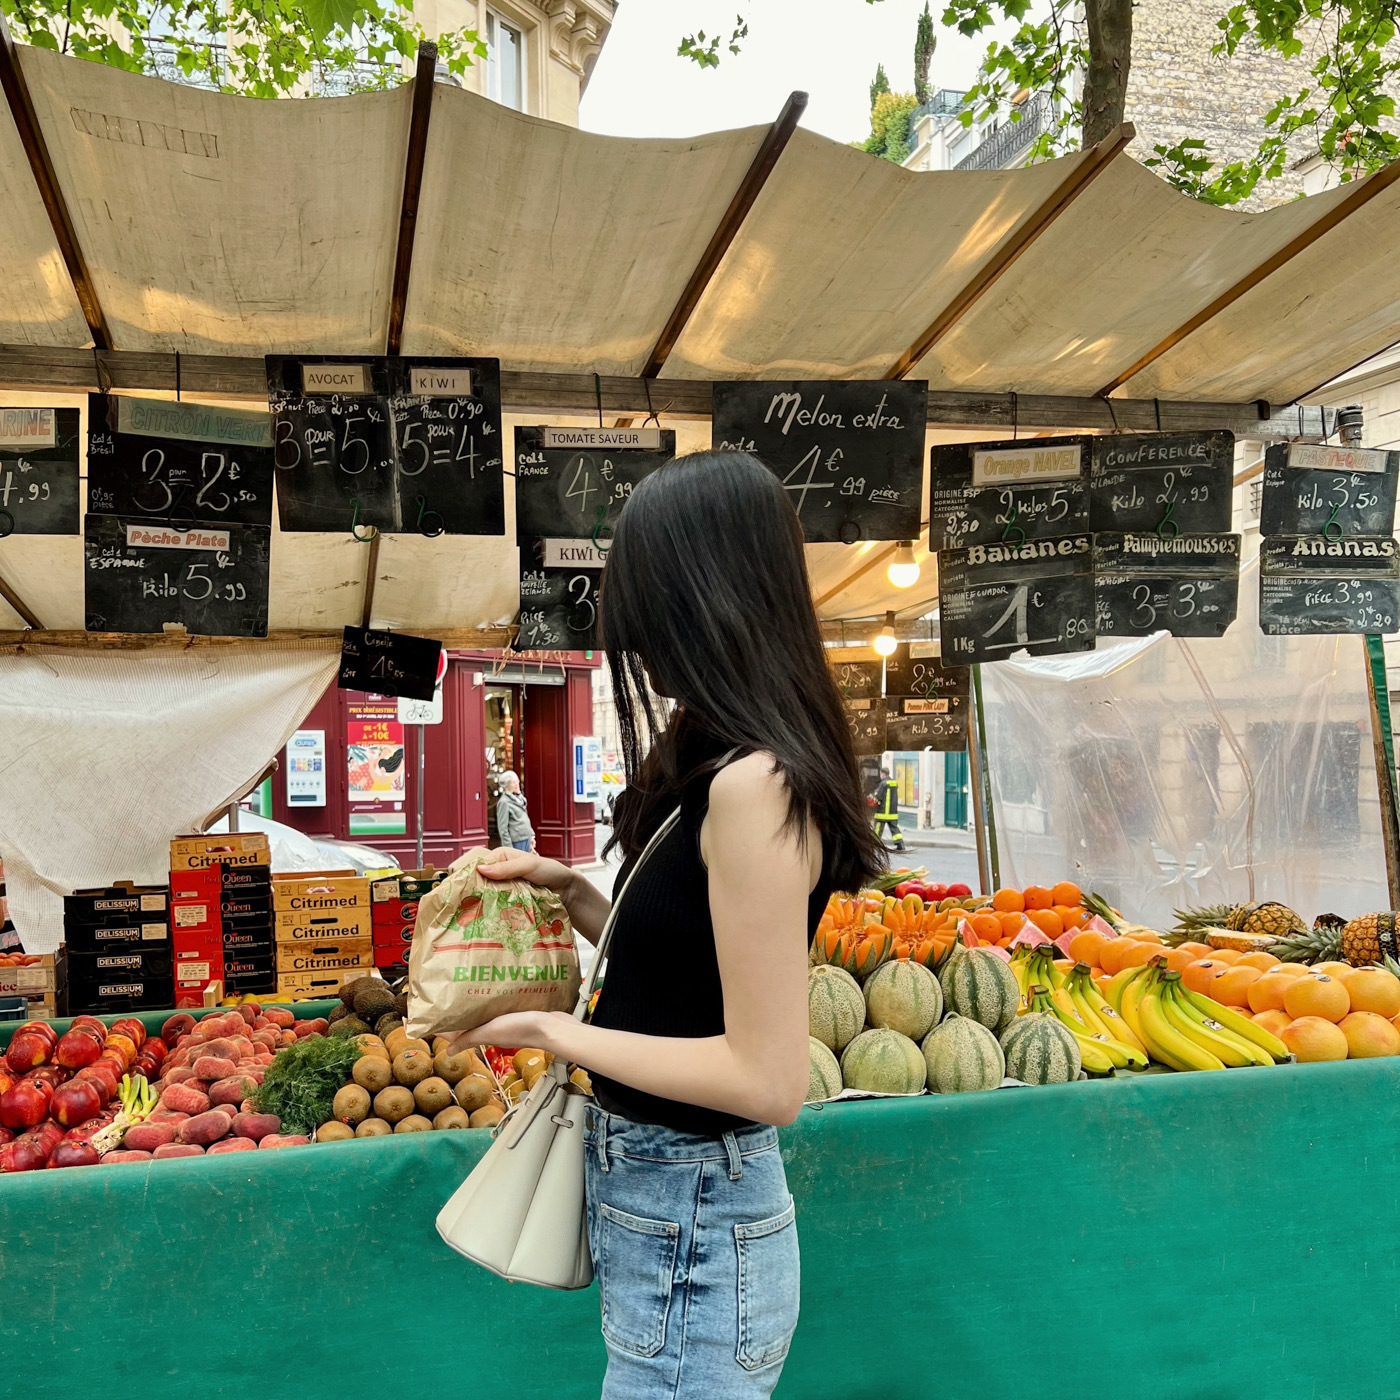 paris bio chợ đồ ăn tốt cho sức khoẻ